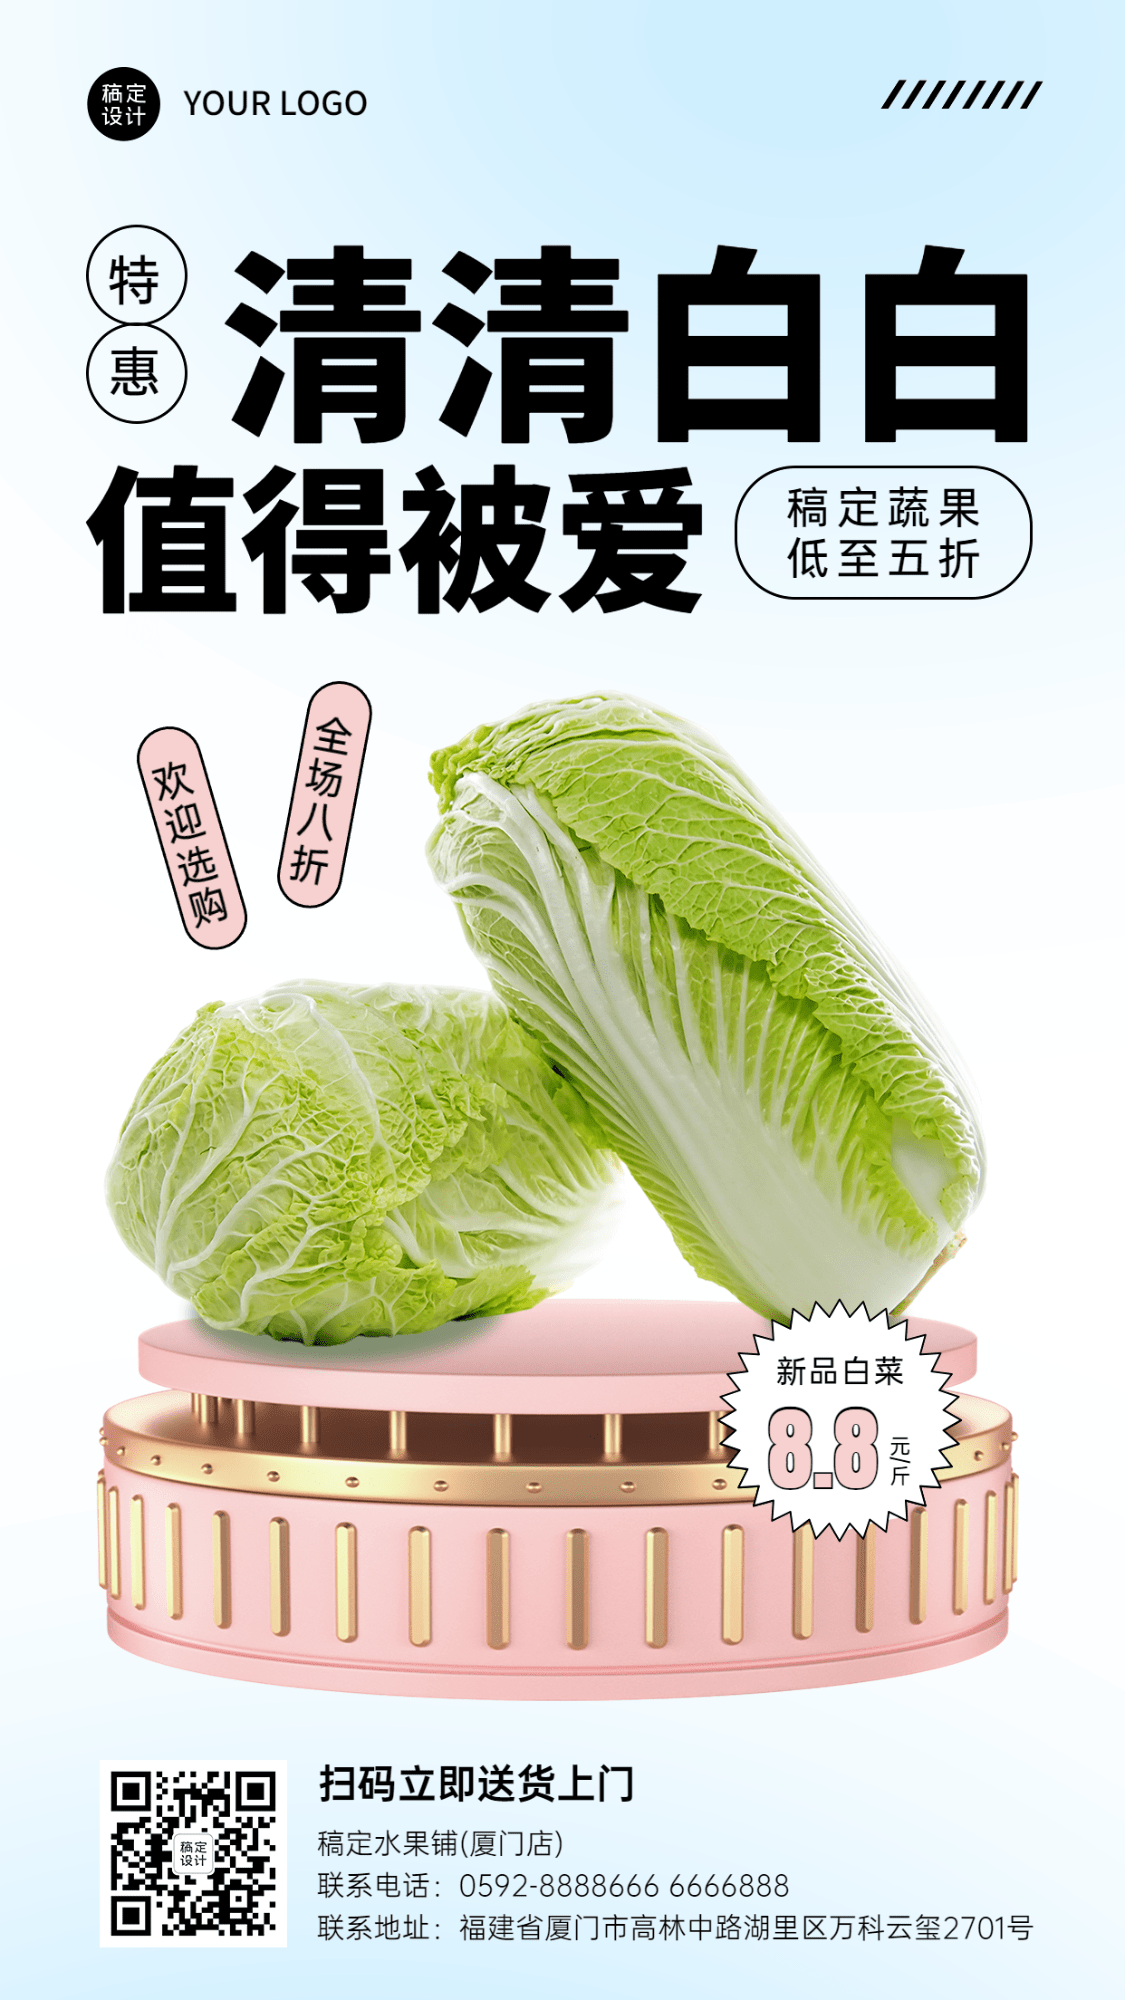 弥散风餐饮蔬菜白菜产品展示营销活动手机海报预览效果